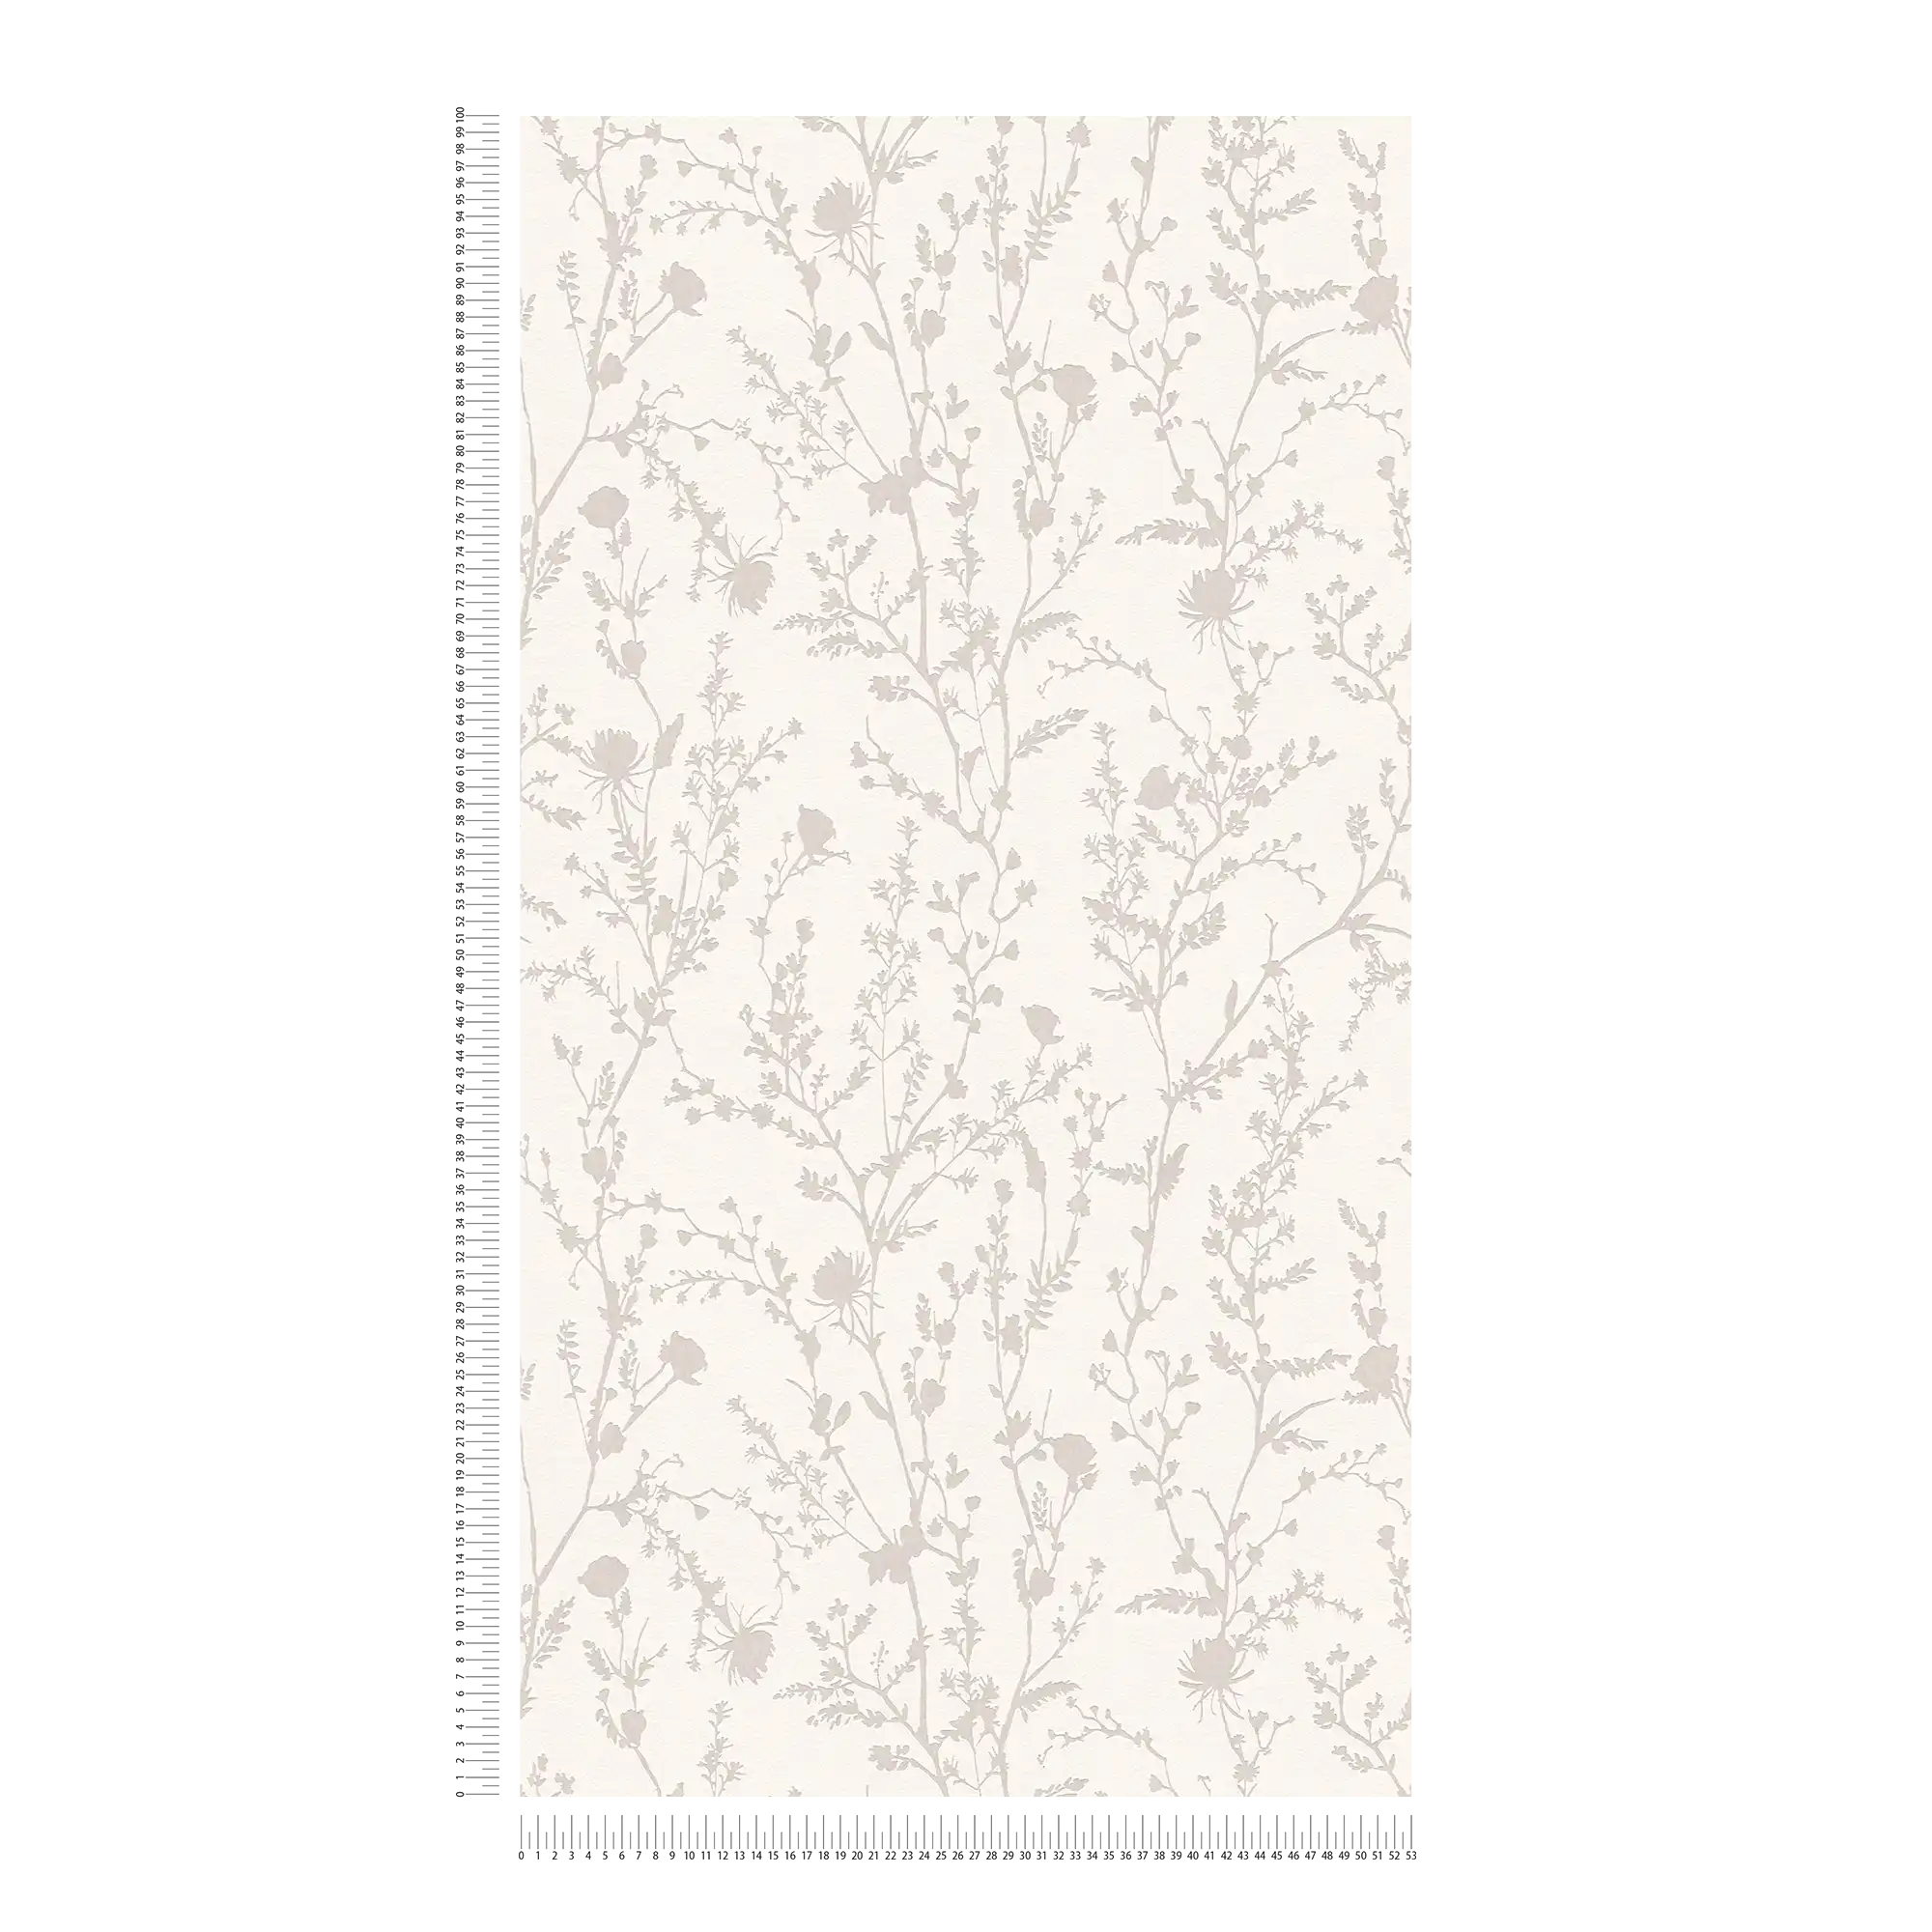             papier peint en papier intissé doux motifs d'herbes et de fleurs - blanc, gris
        